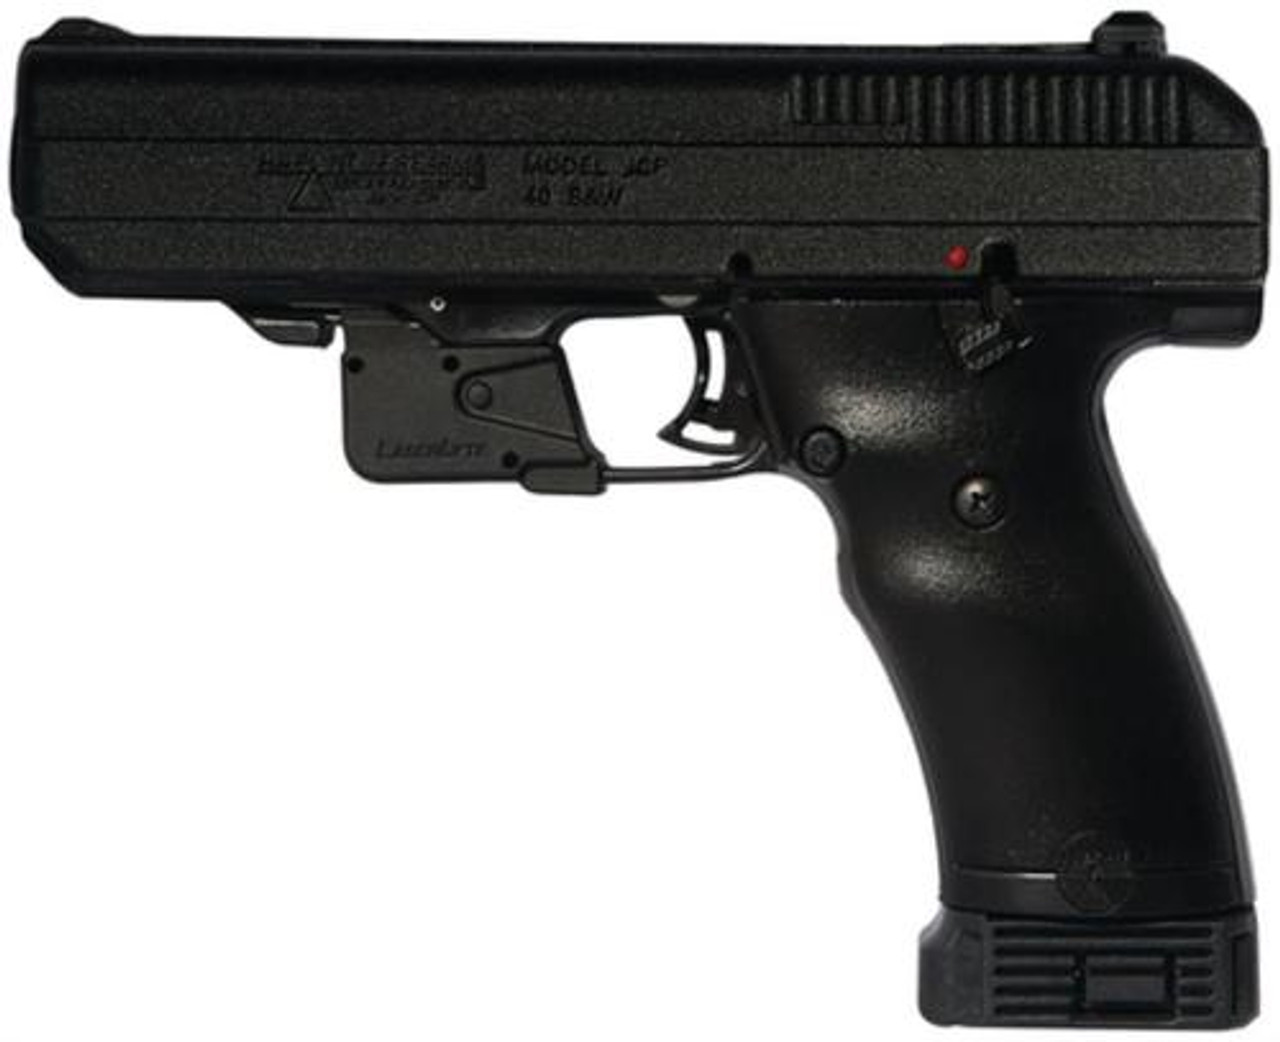 Hi-Point 9mm Carbine, Forward Grip, Light, & Laser 10rd Mag